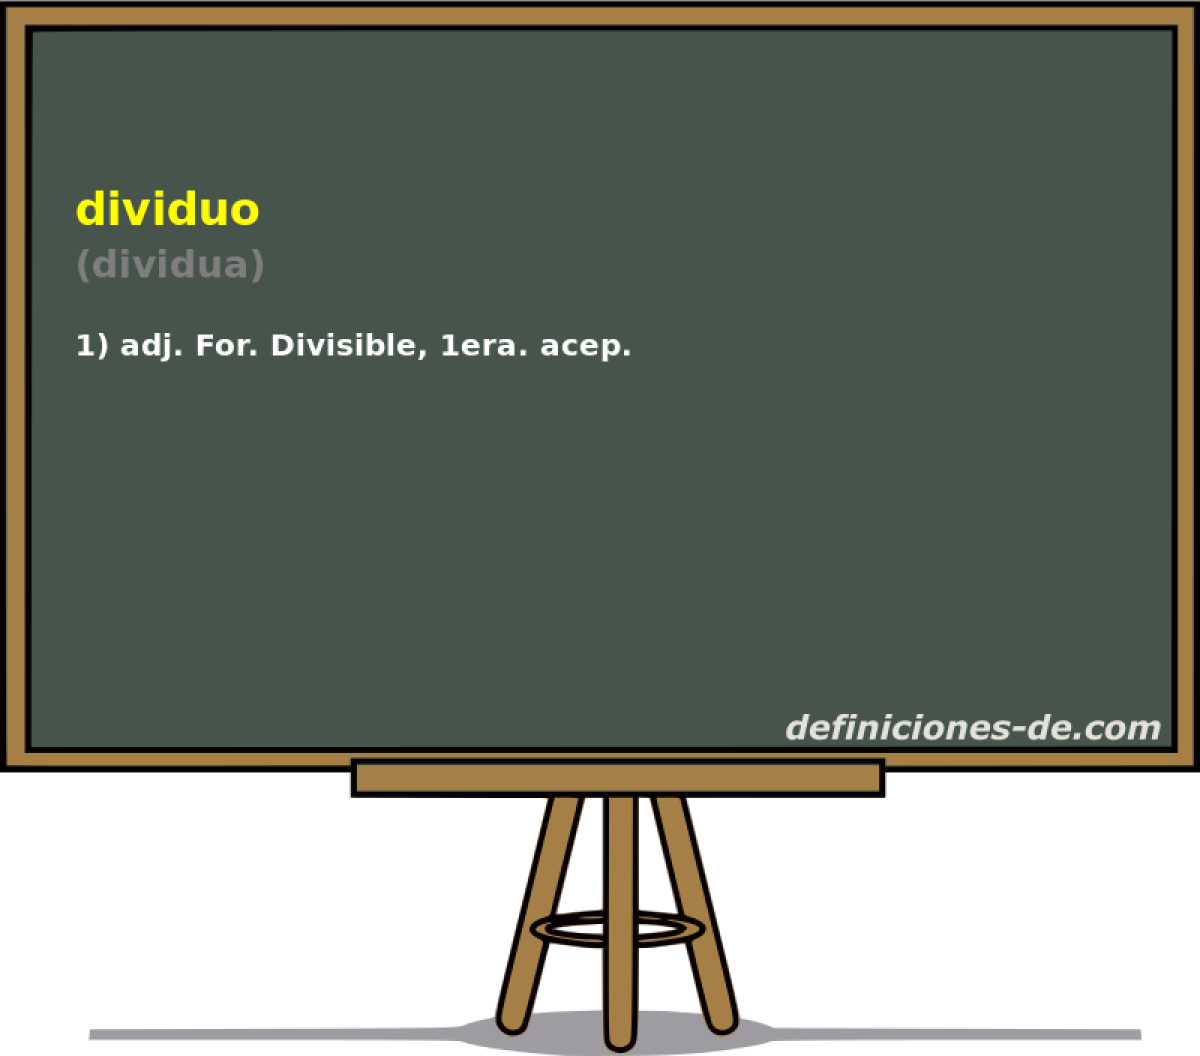 dividuo (dividua)